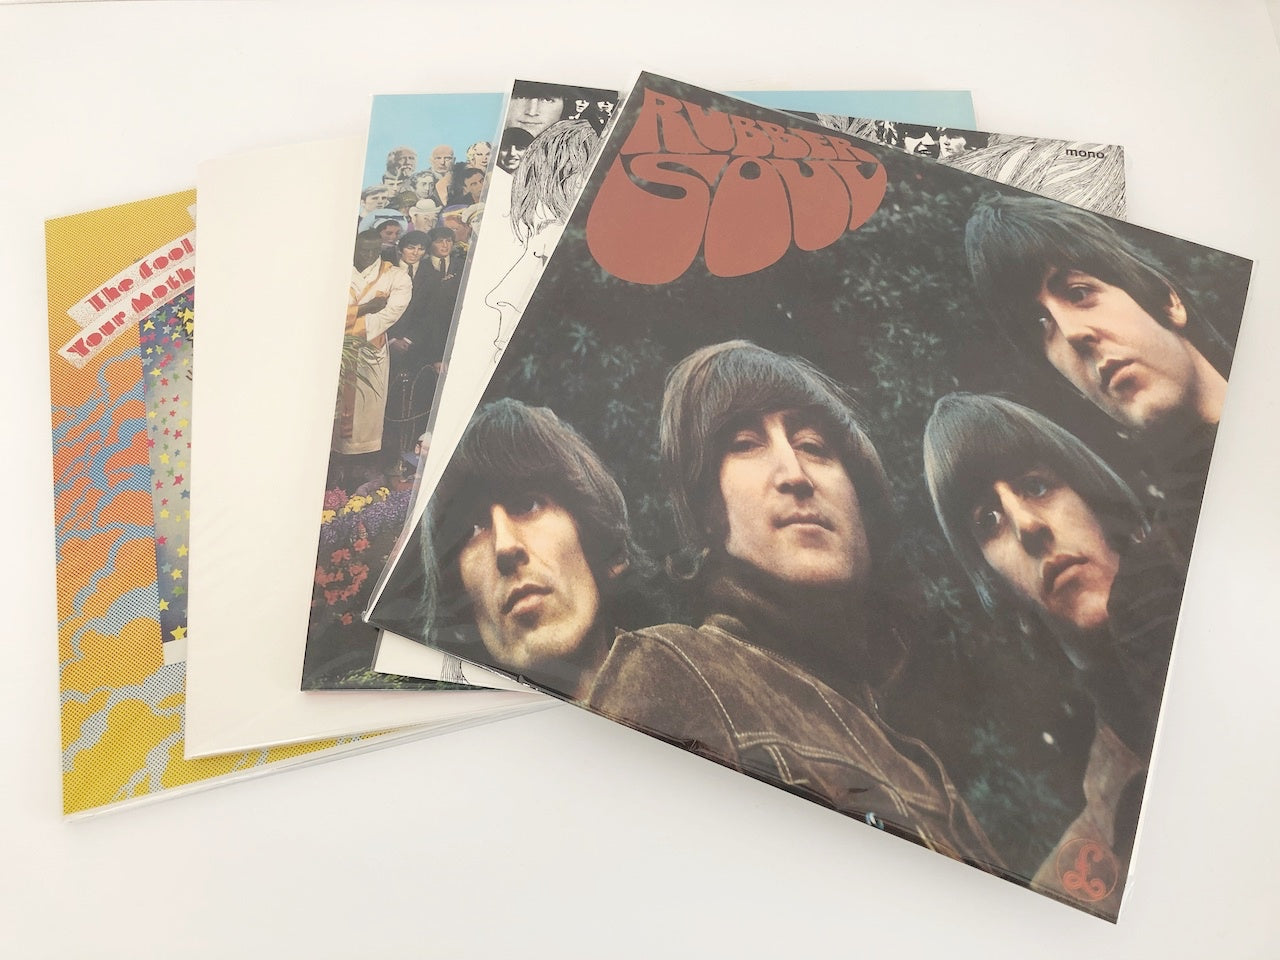 【盤未使用】LP/ THE BEATLES IN MONO BOX / EU盤 14枚組 ブックレット(未開封)付き 5099963379716